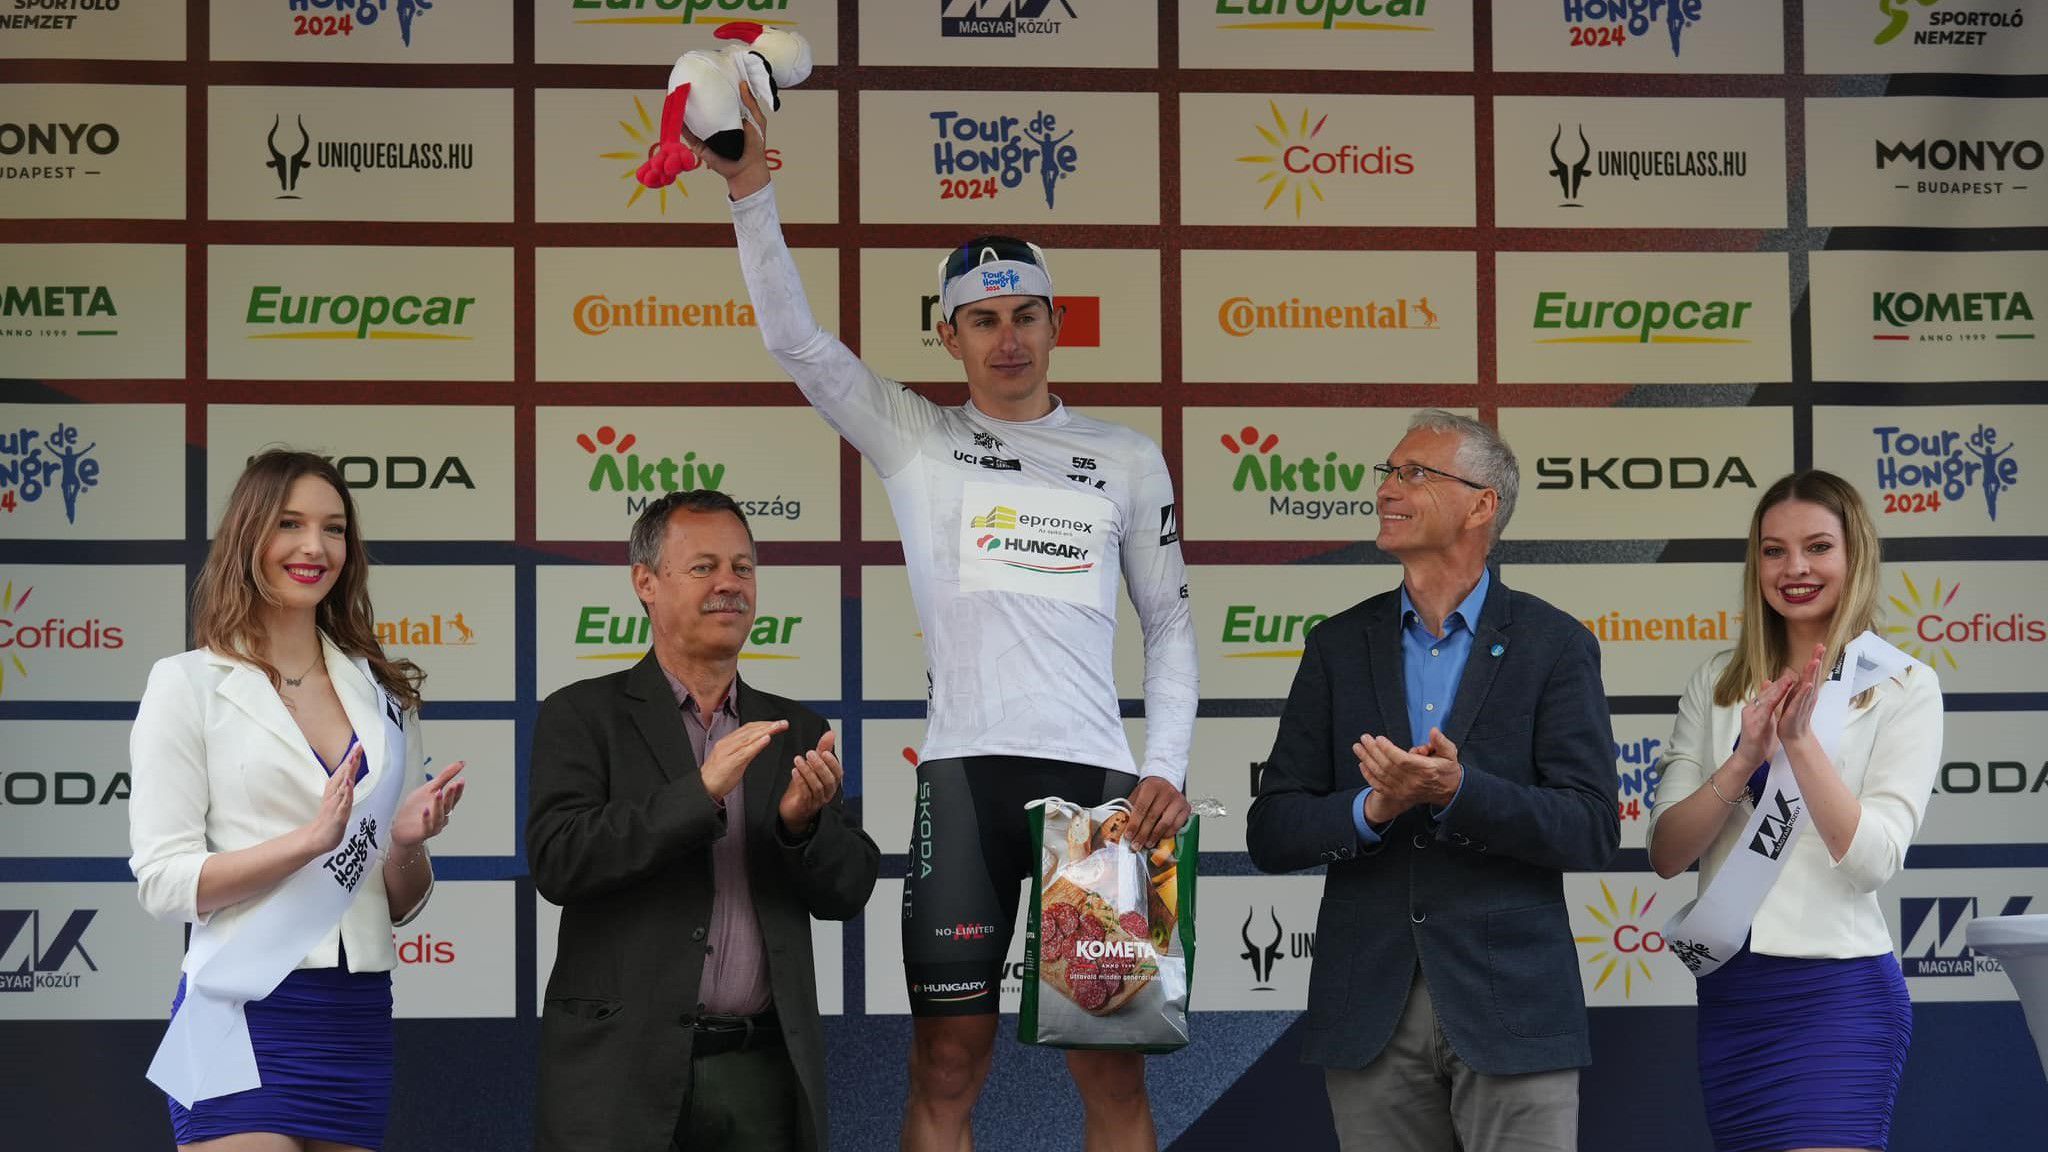 Nagy bukással végződött a Tour de Hongrie első szakasza – videóval